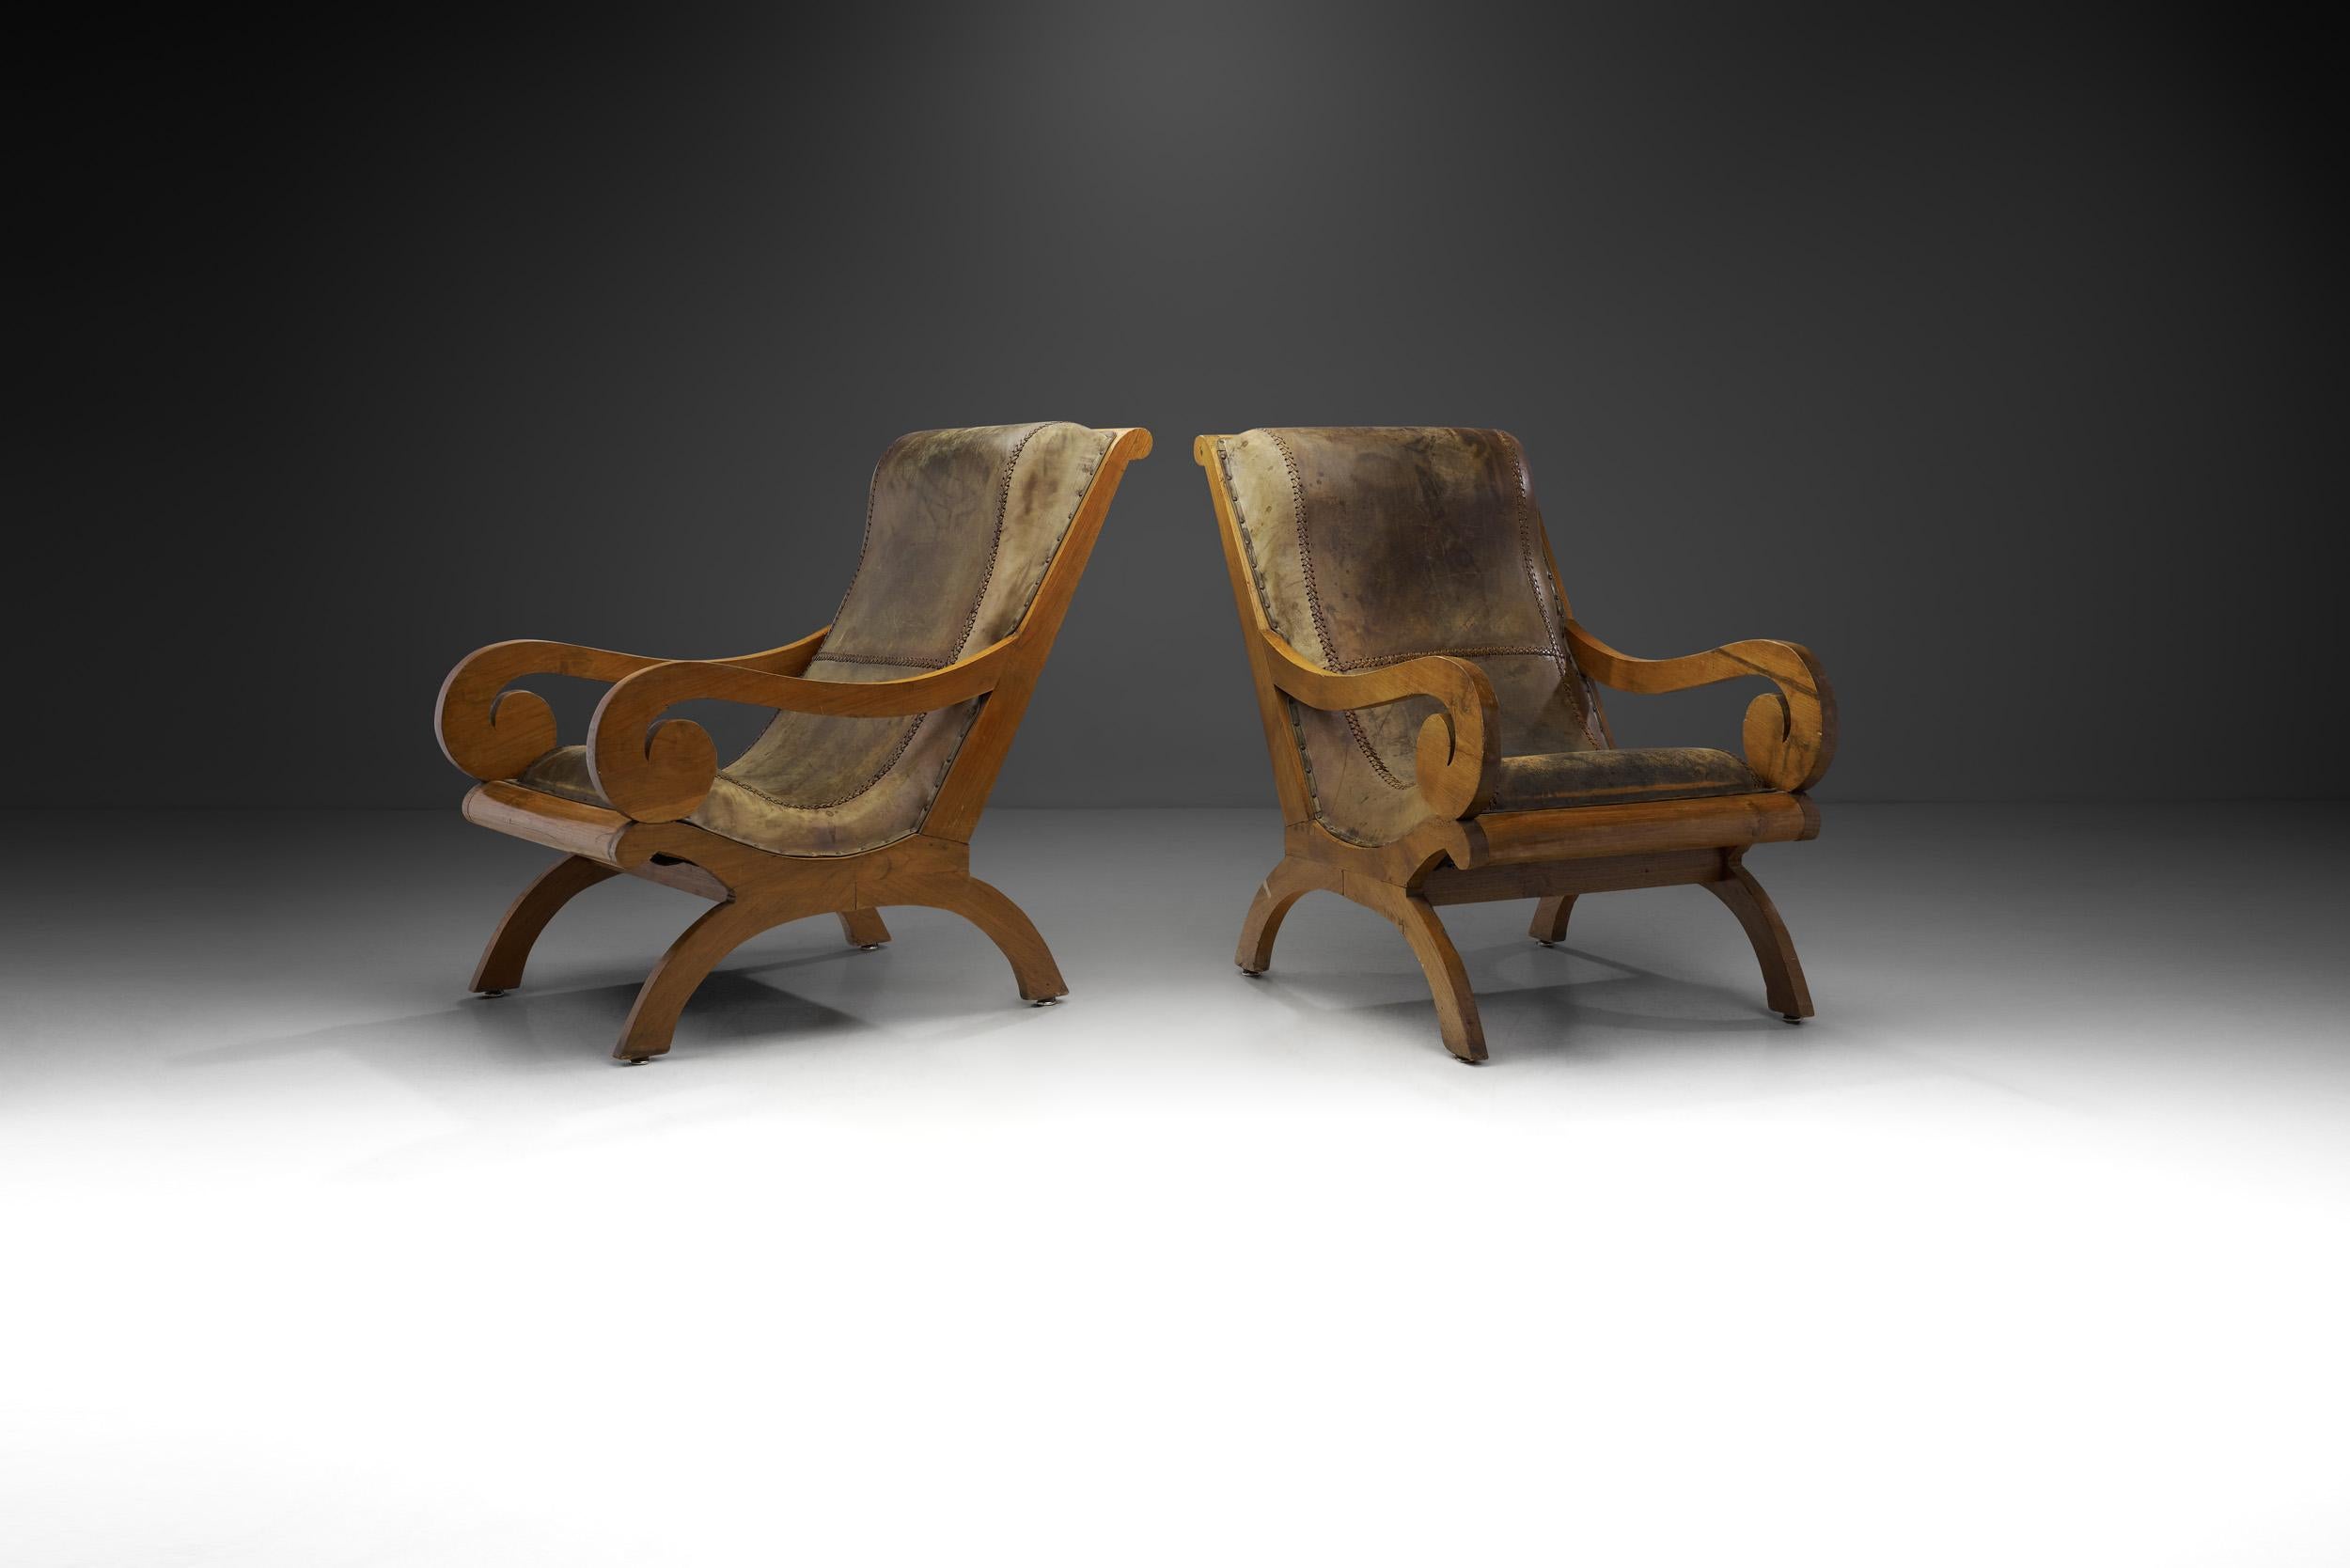 Ces chaises sont esthétiquement étonnantes et, sur le plan du design, un mélange de l'emblématique chaise Butaque et des chaises planter coloniales indonésiennes. Le butaque, un hybride de chaises espagnoles en X et de duhos rituels précolombiens